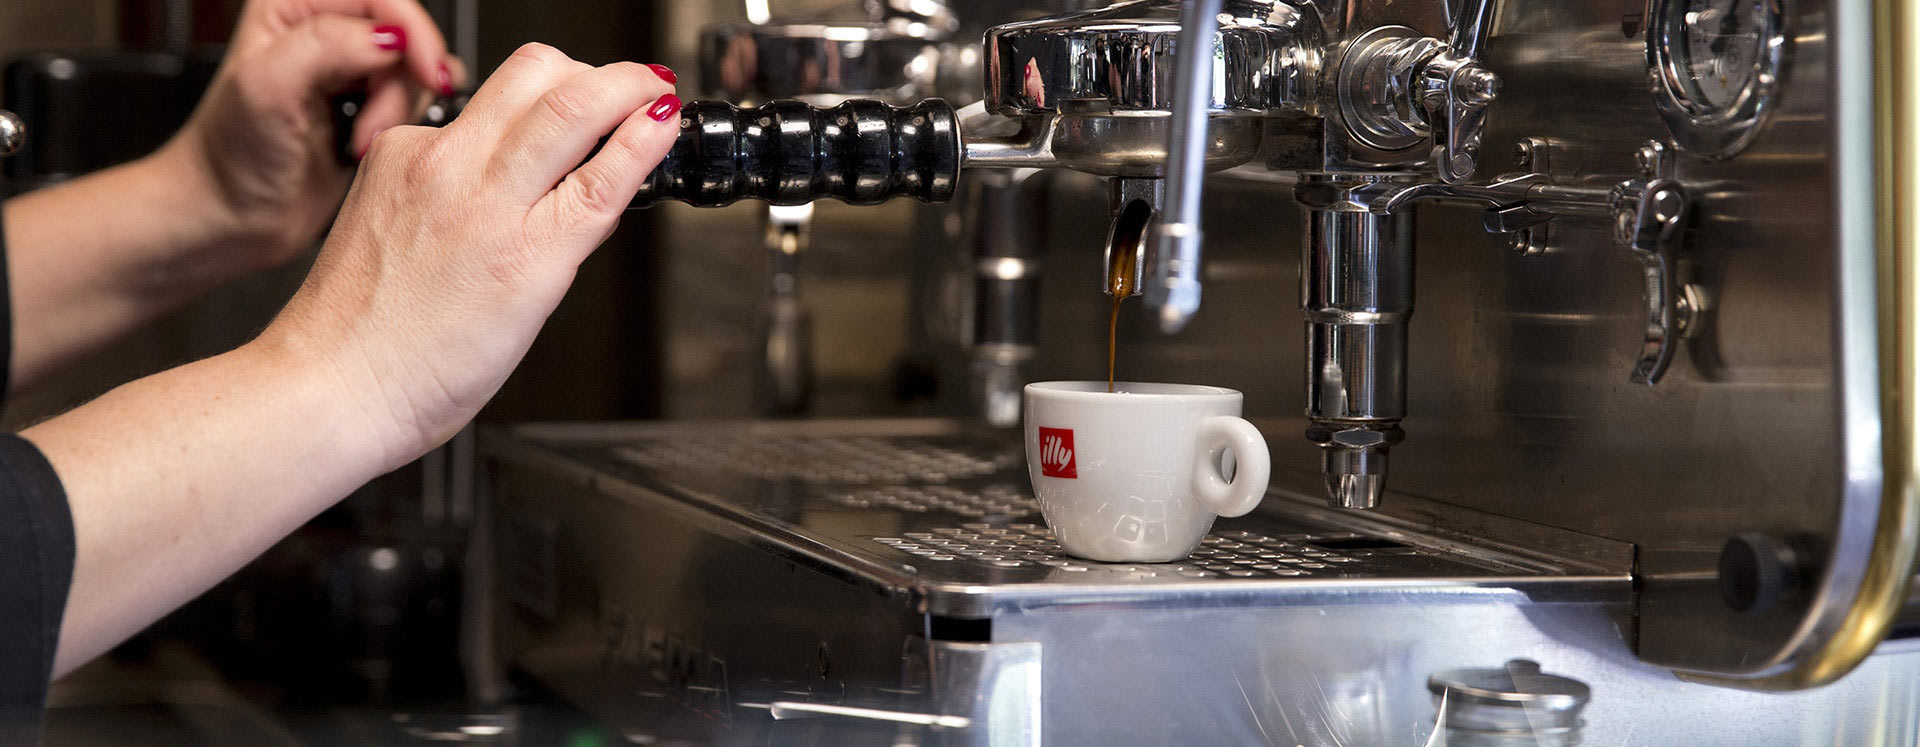 Handen koffiezetapparaat barista bereidt een kopje koffie